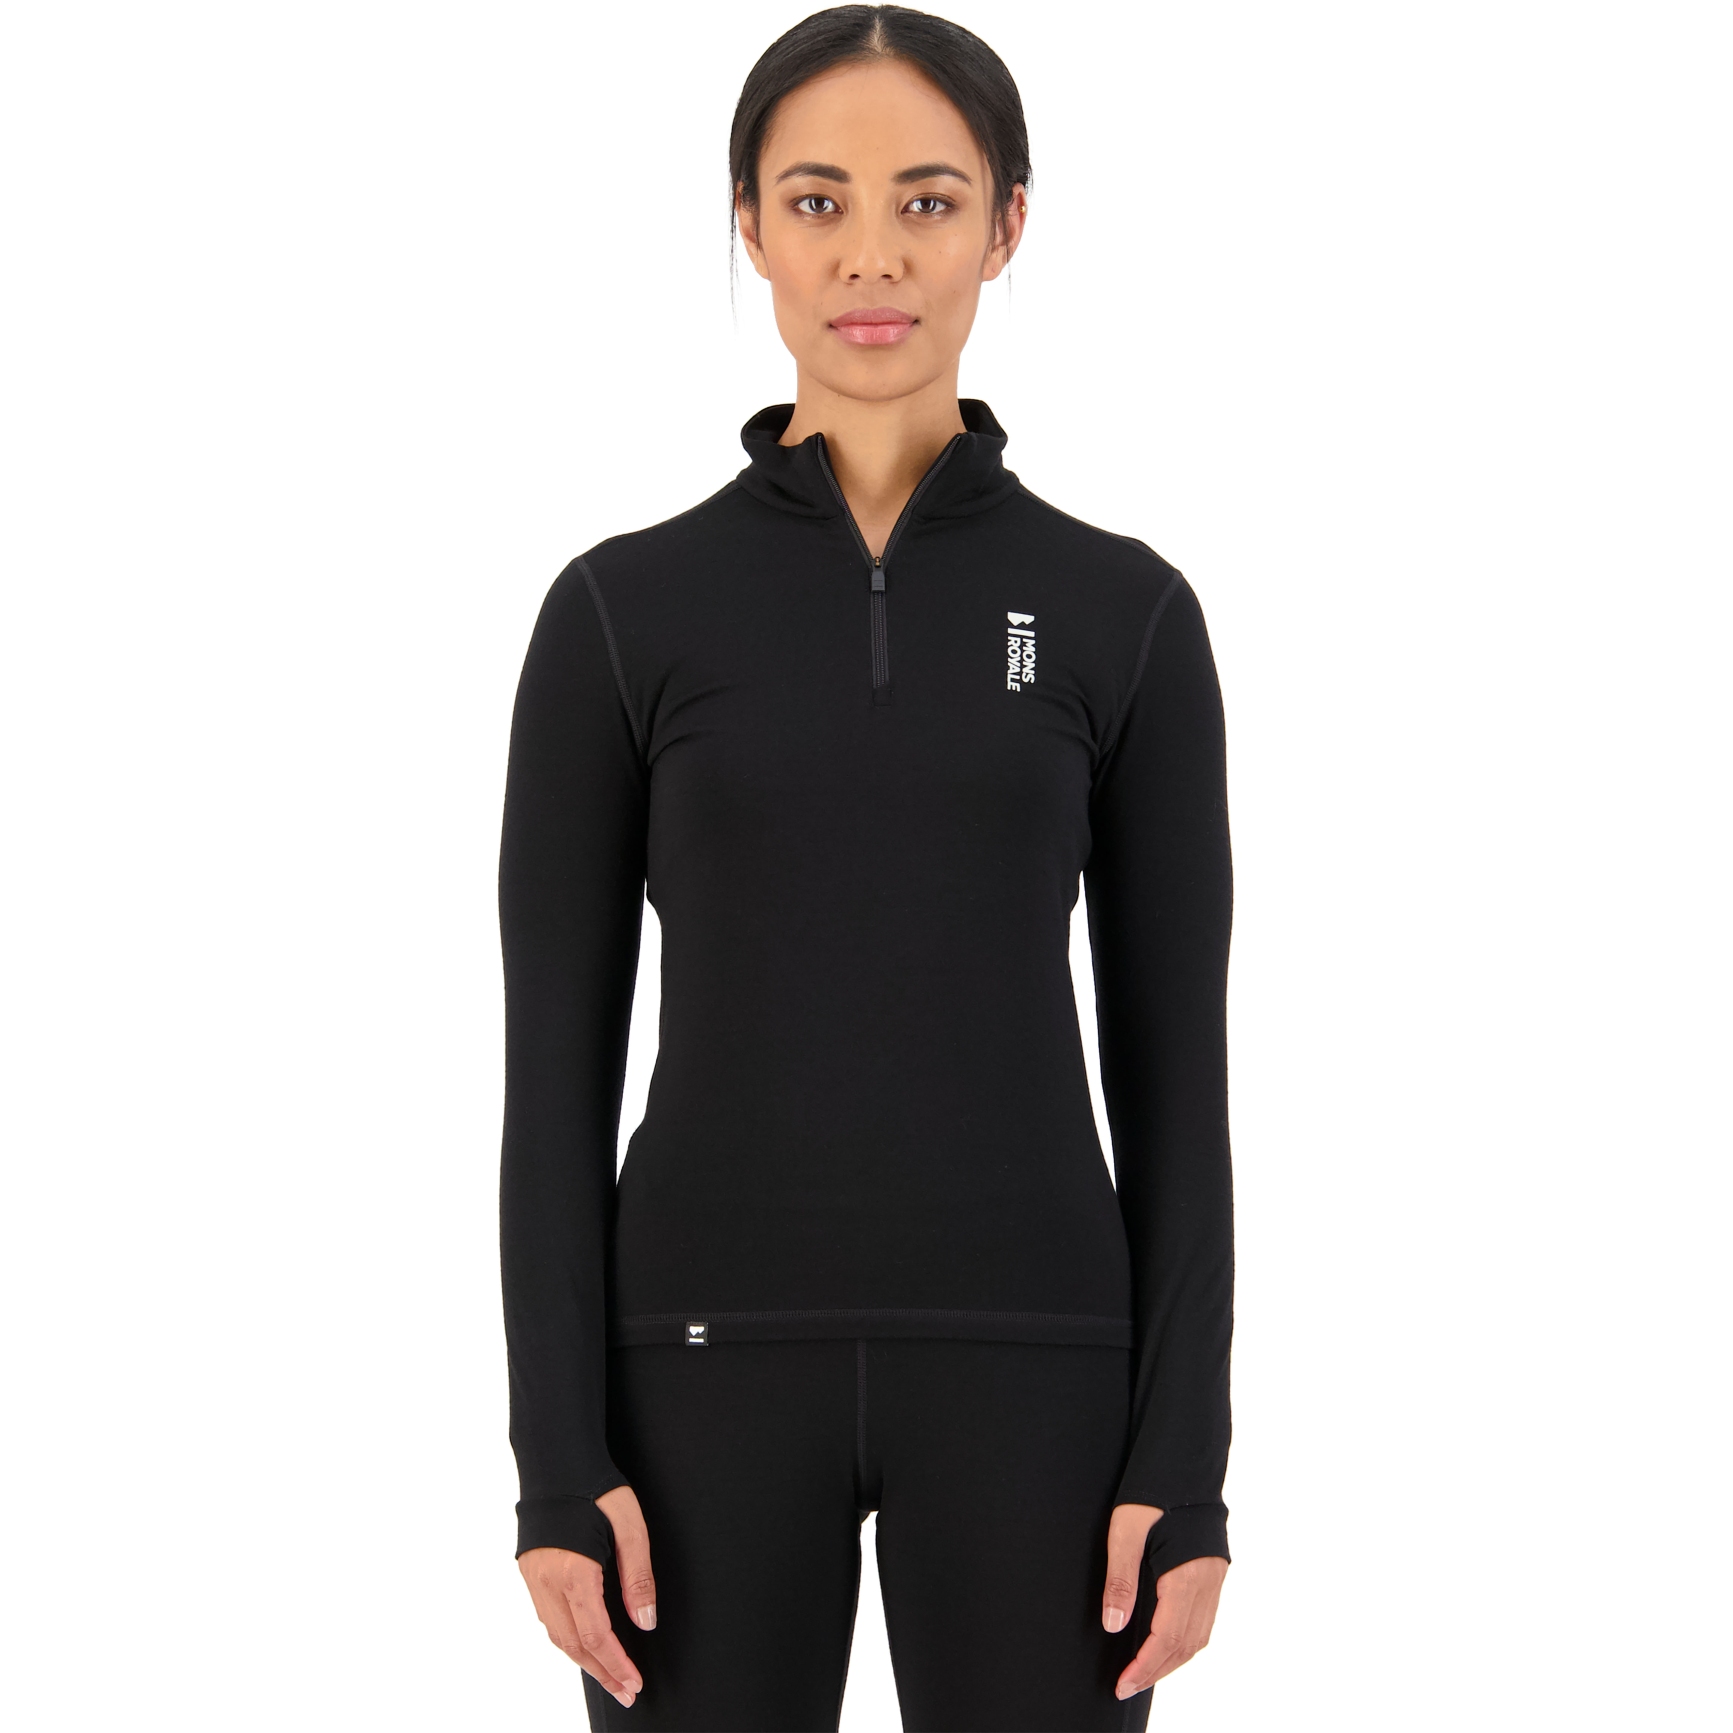 Produktbild von Mons Royale Cascade Merino Flex 1/4 Zip Damen Langarmshirt - schwarz